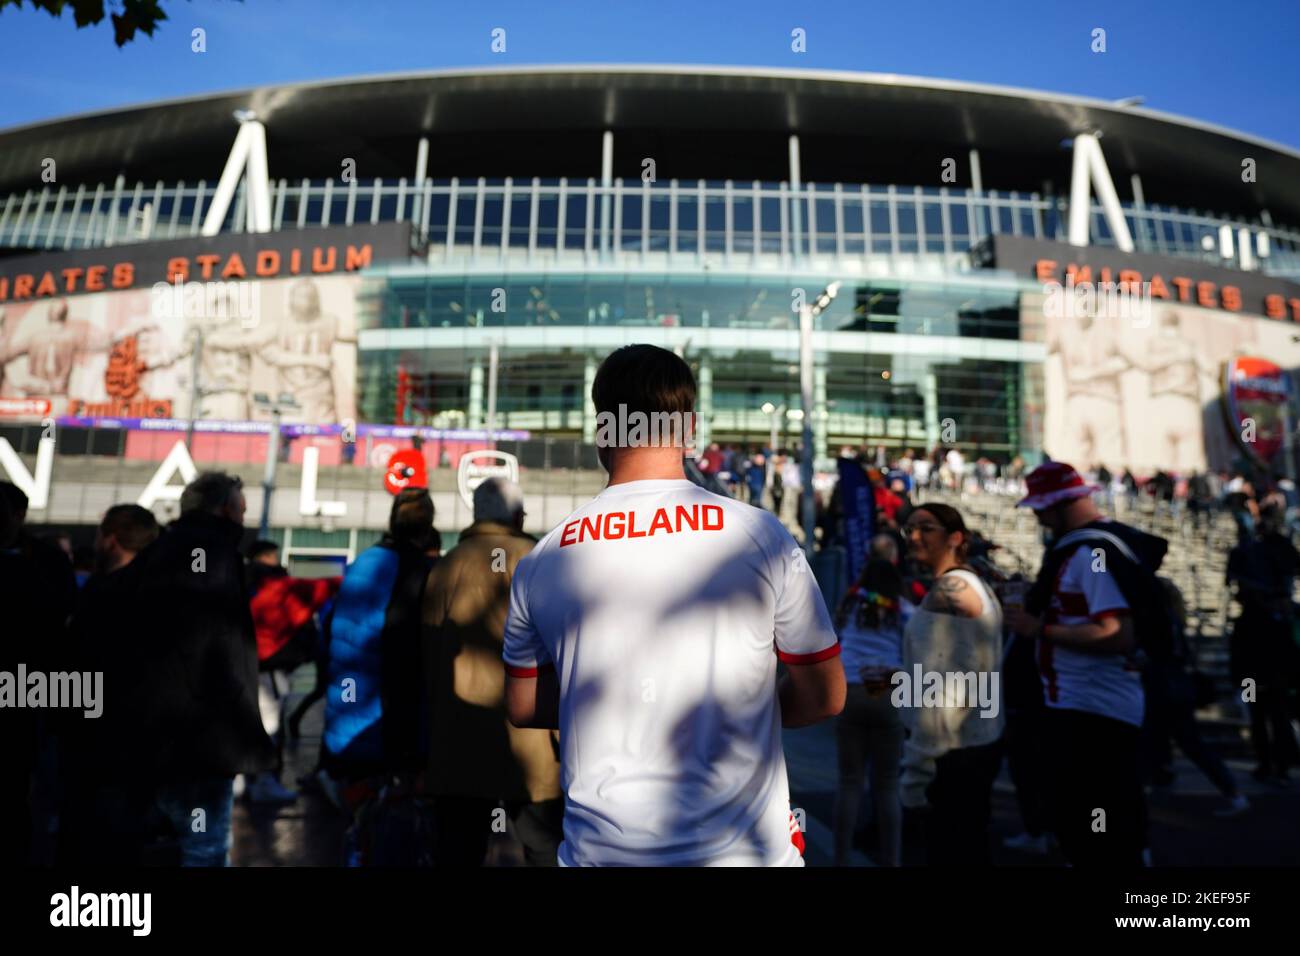 England-Fans kommen zum Halbfinalspiel der Rugby League im Emirates Stadium in London. Bilddatum: Samstag, 12. November 2022. Stockfoto